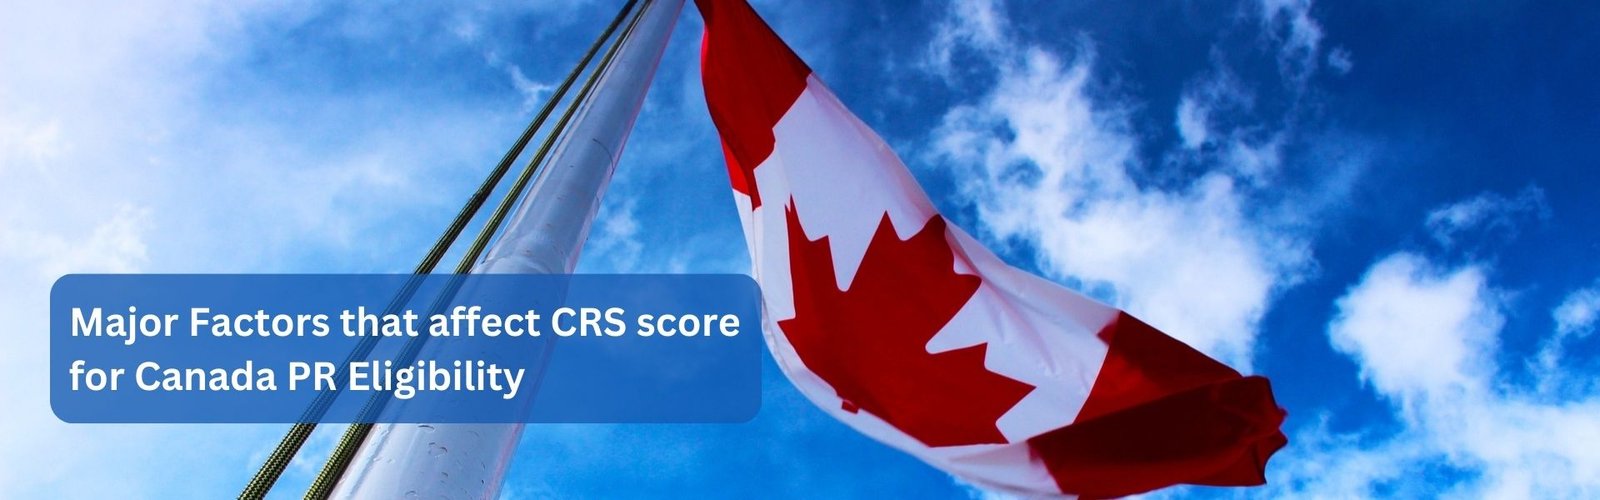 Major Factors that affect CRS score for Canada PR Eligibility